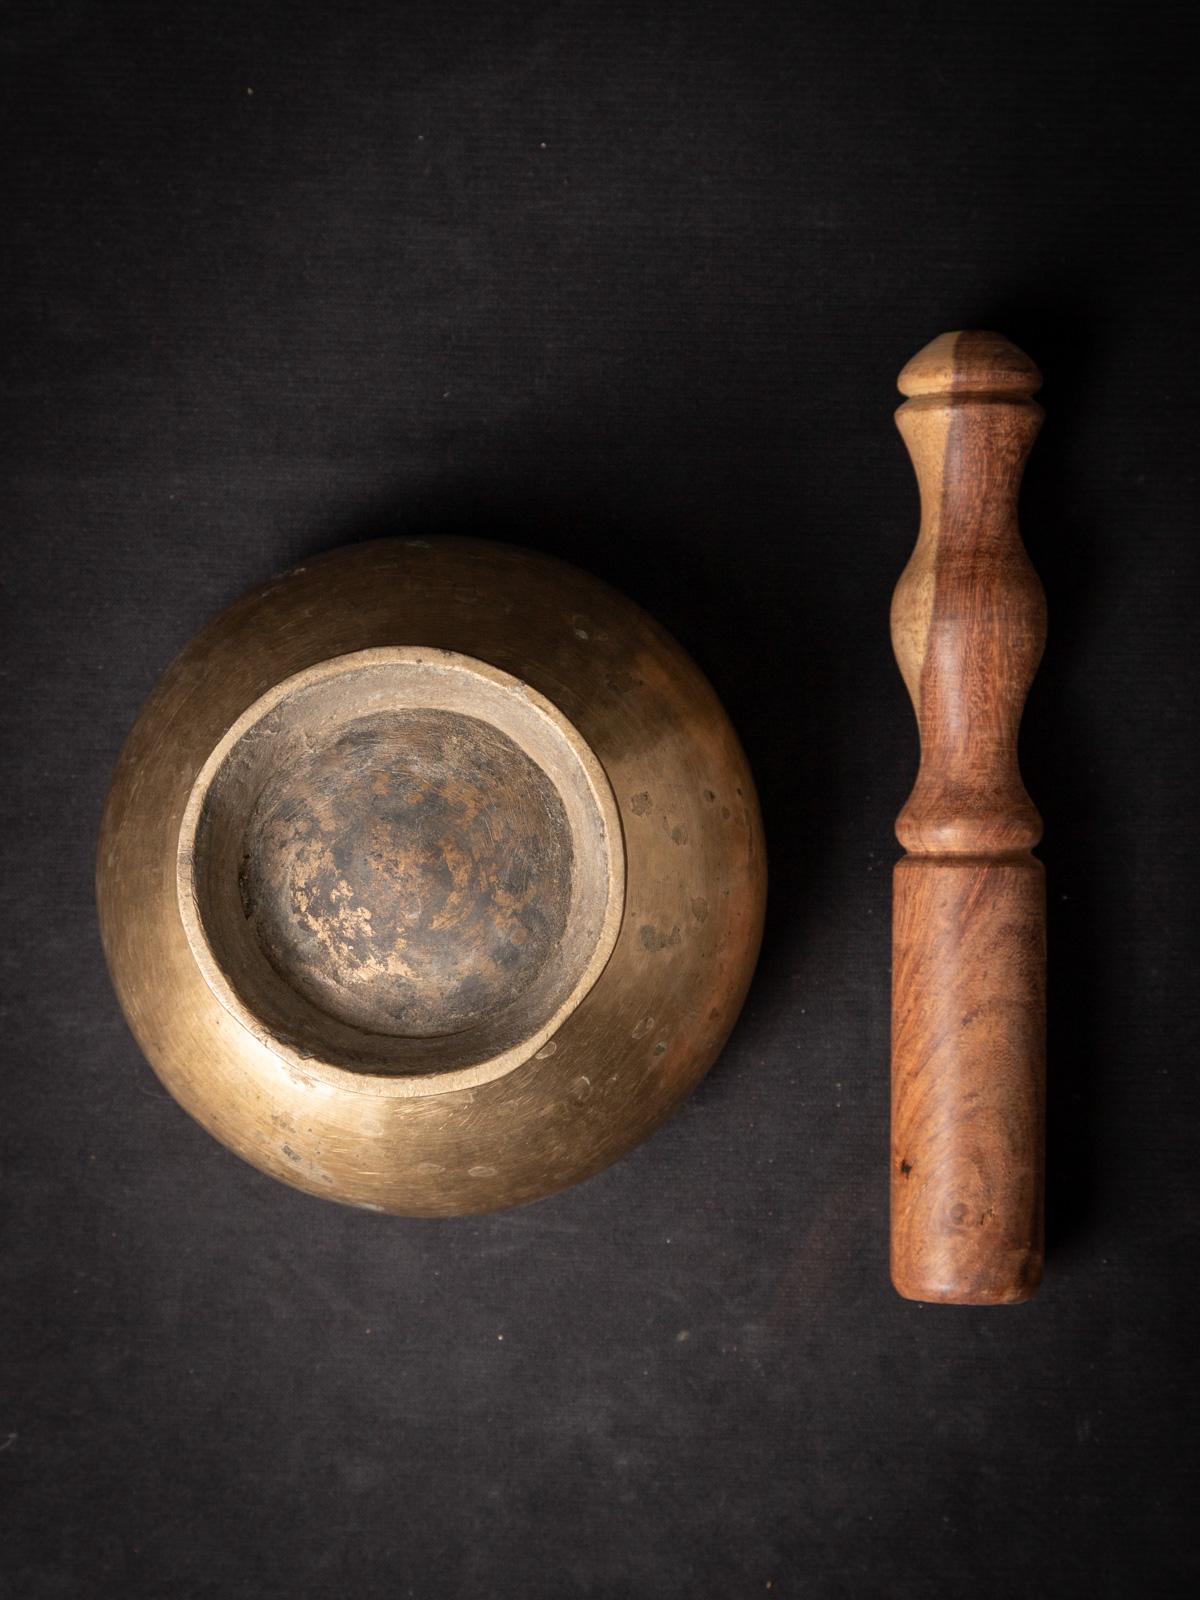 Le bol chantant népalais en bronze ancien est un instrument de musique captivant fabriqué en bronze de haute qualité. D'une hauteur de 8,3 cm et d'un diamètre de 13 cm, ce bol chantant émet des sons résonnants qui évoquent un sentiment de